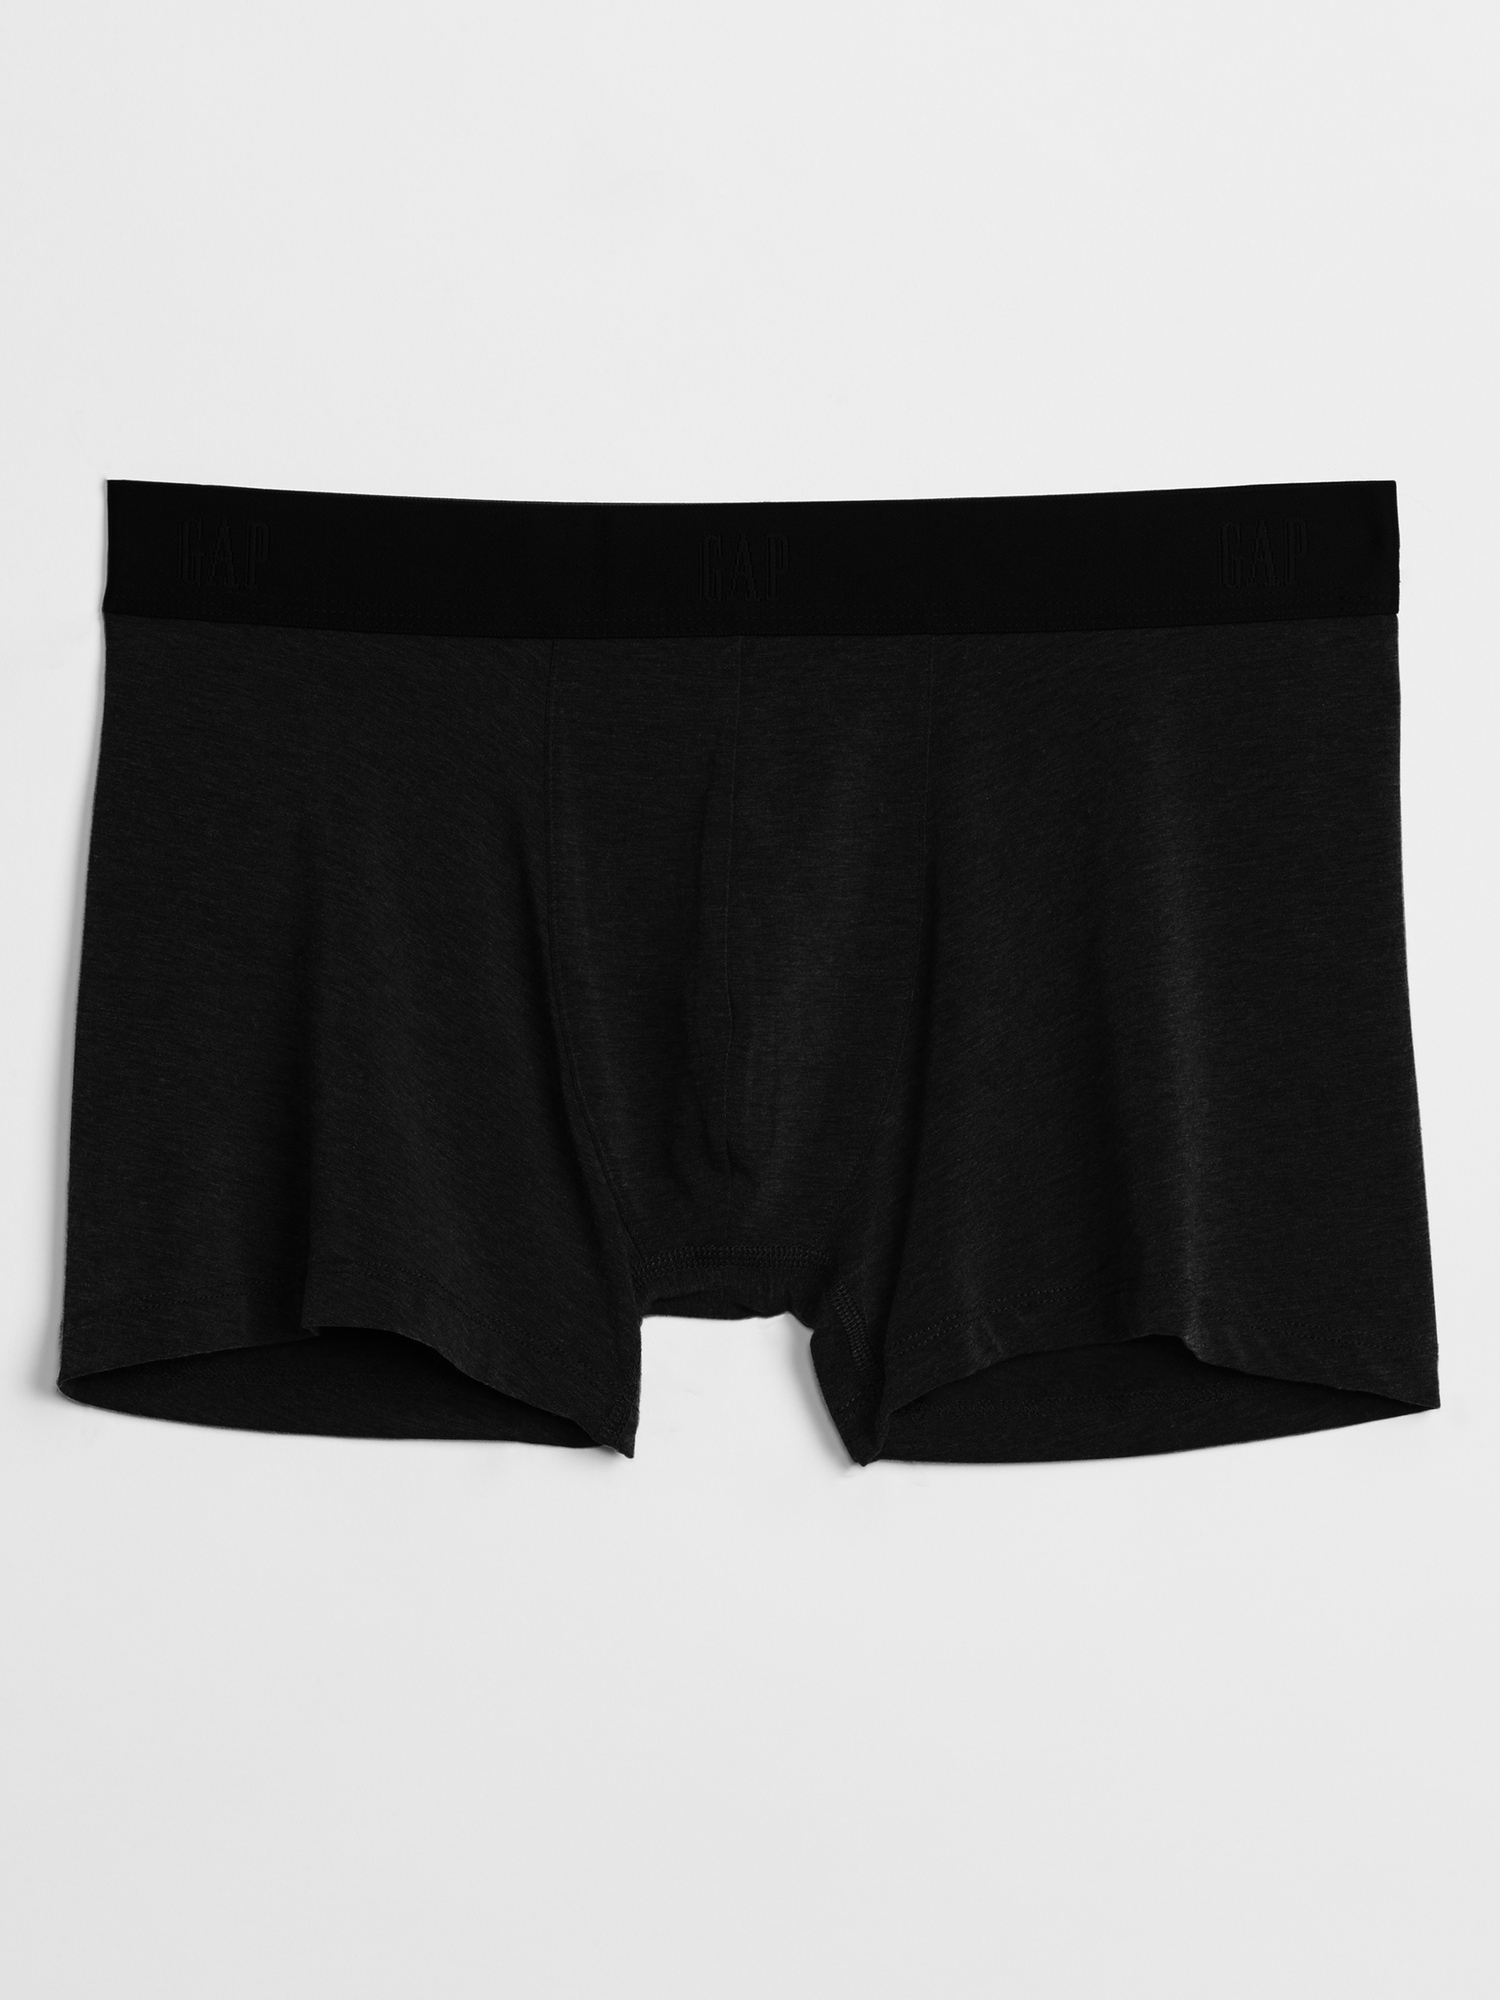 Buy Men's Gap Underwear Online